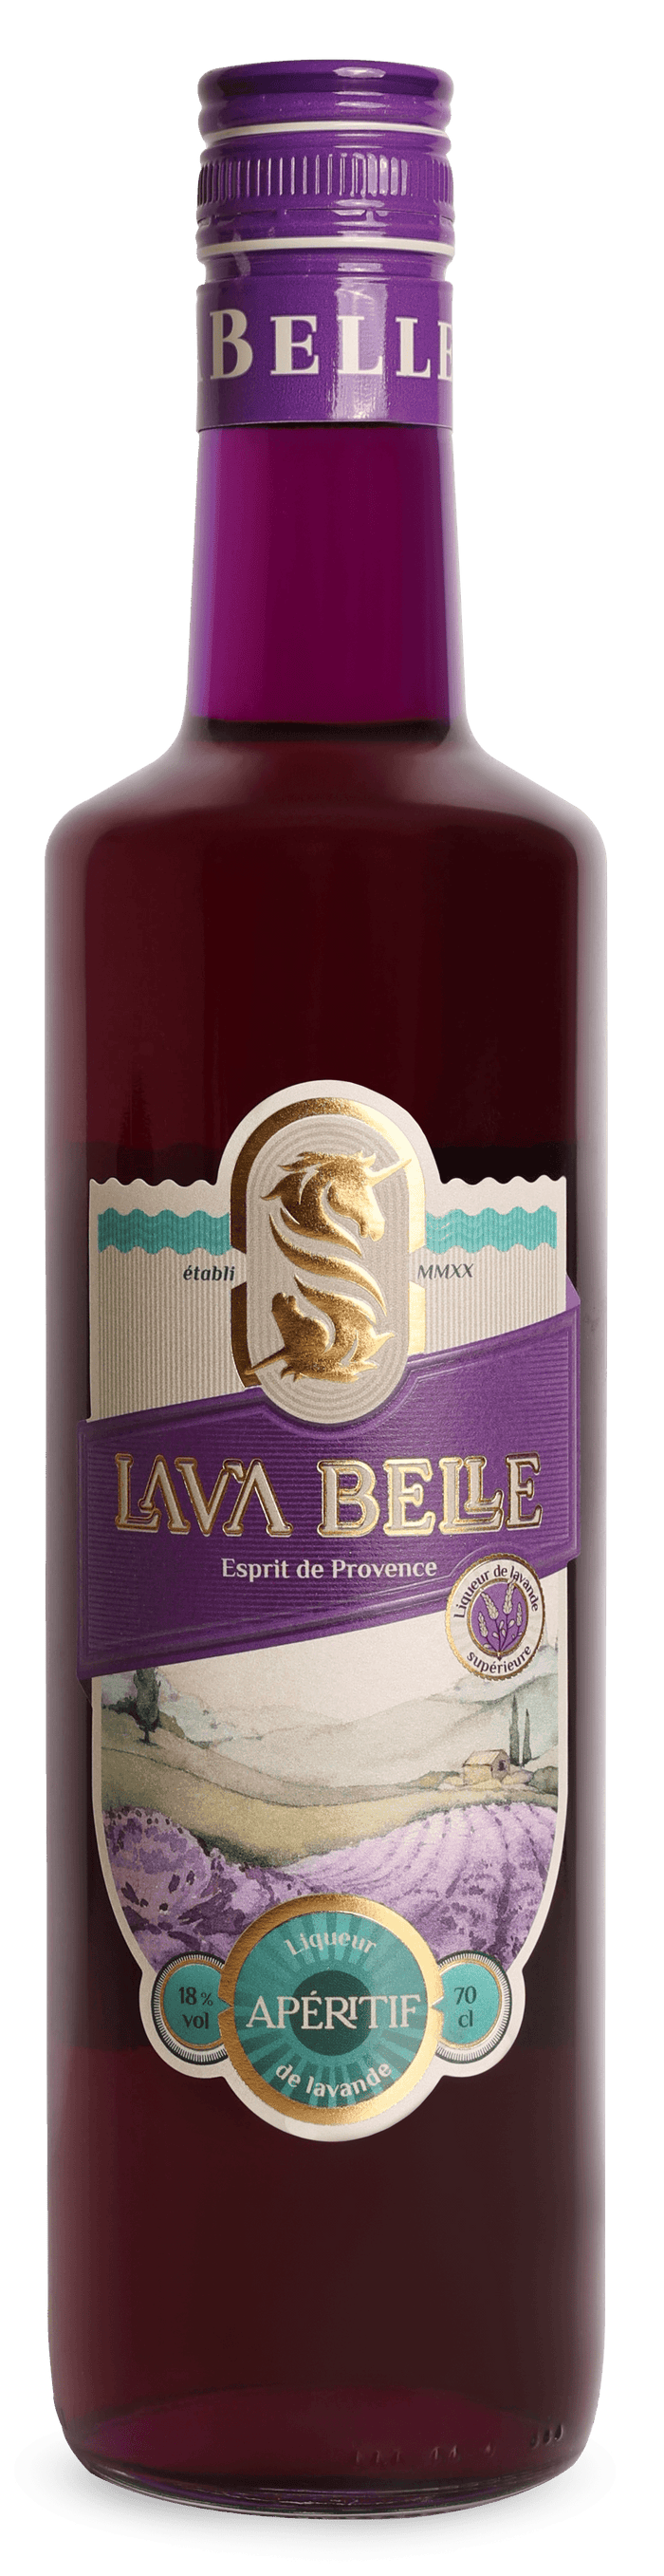 LAV'A BELLE - Lavender aperitif 